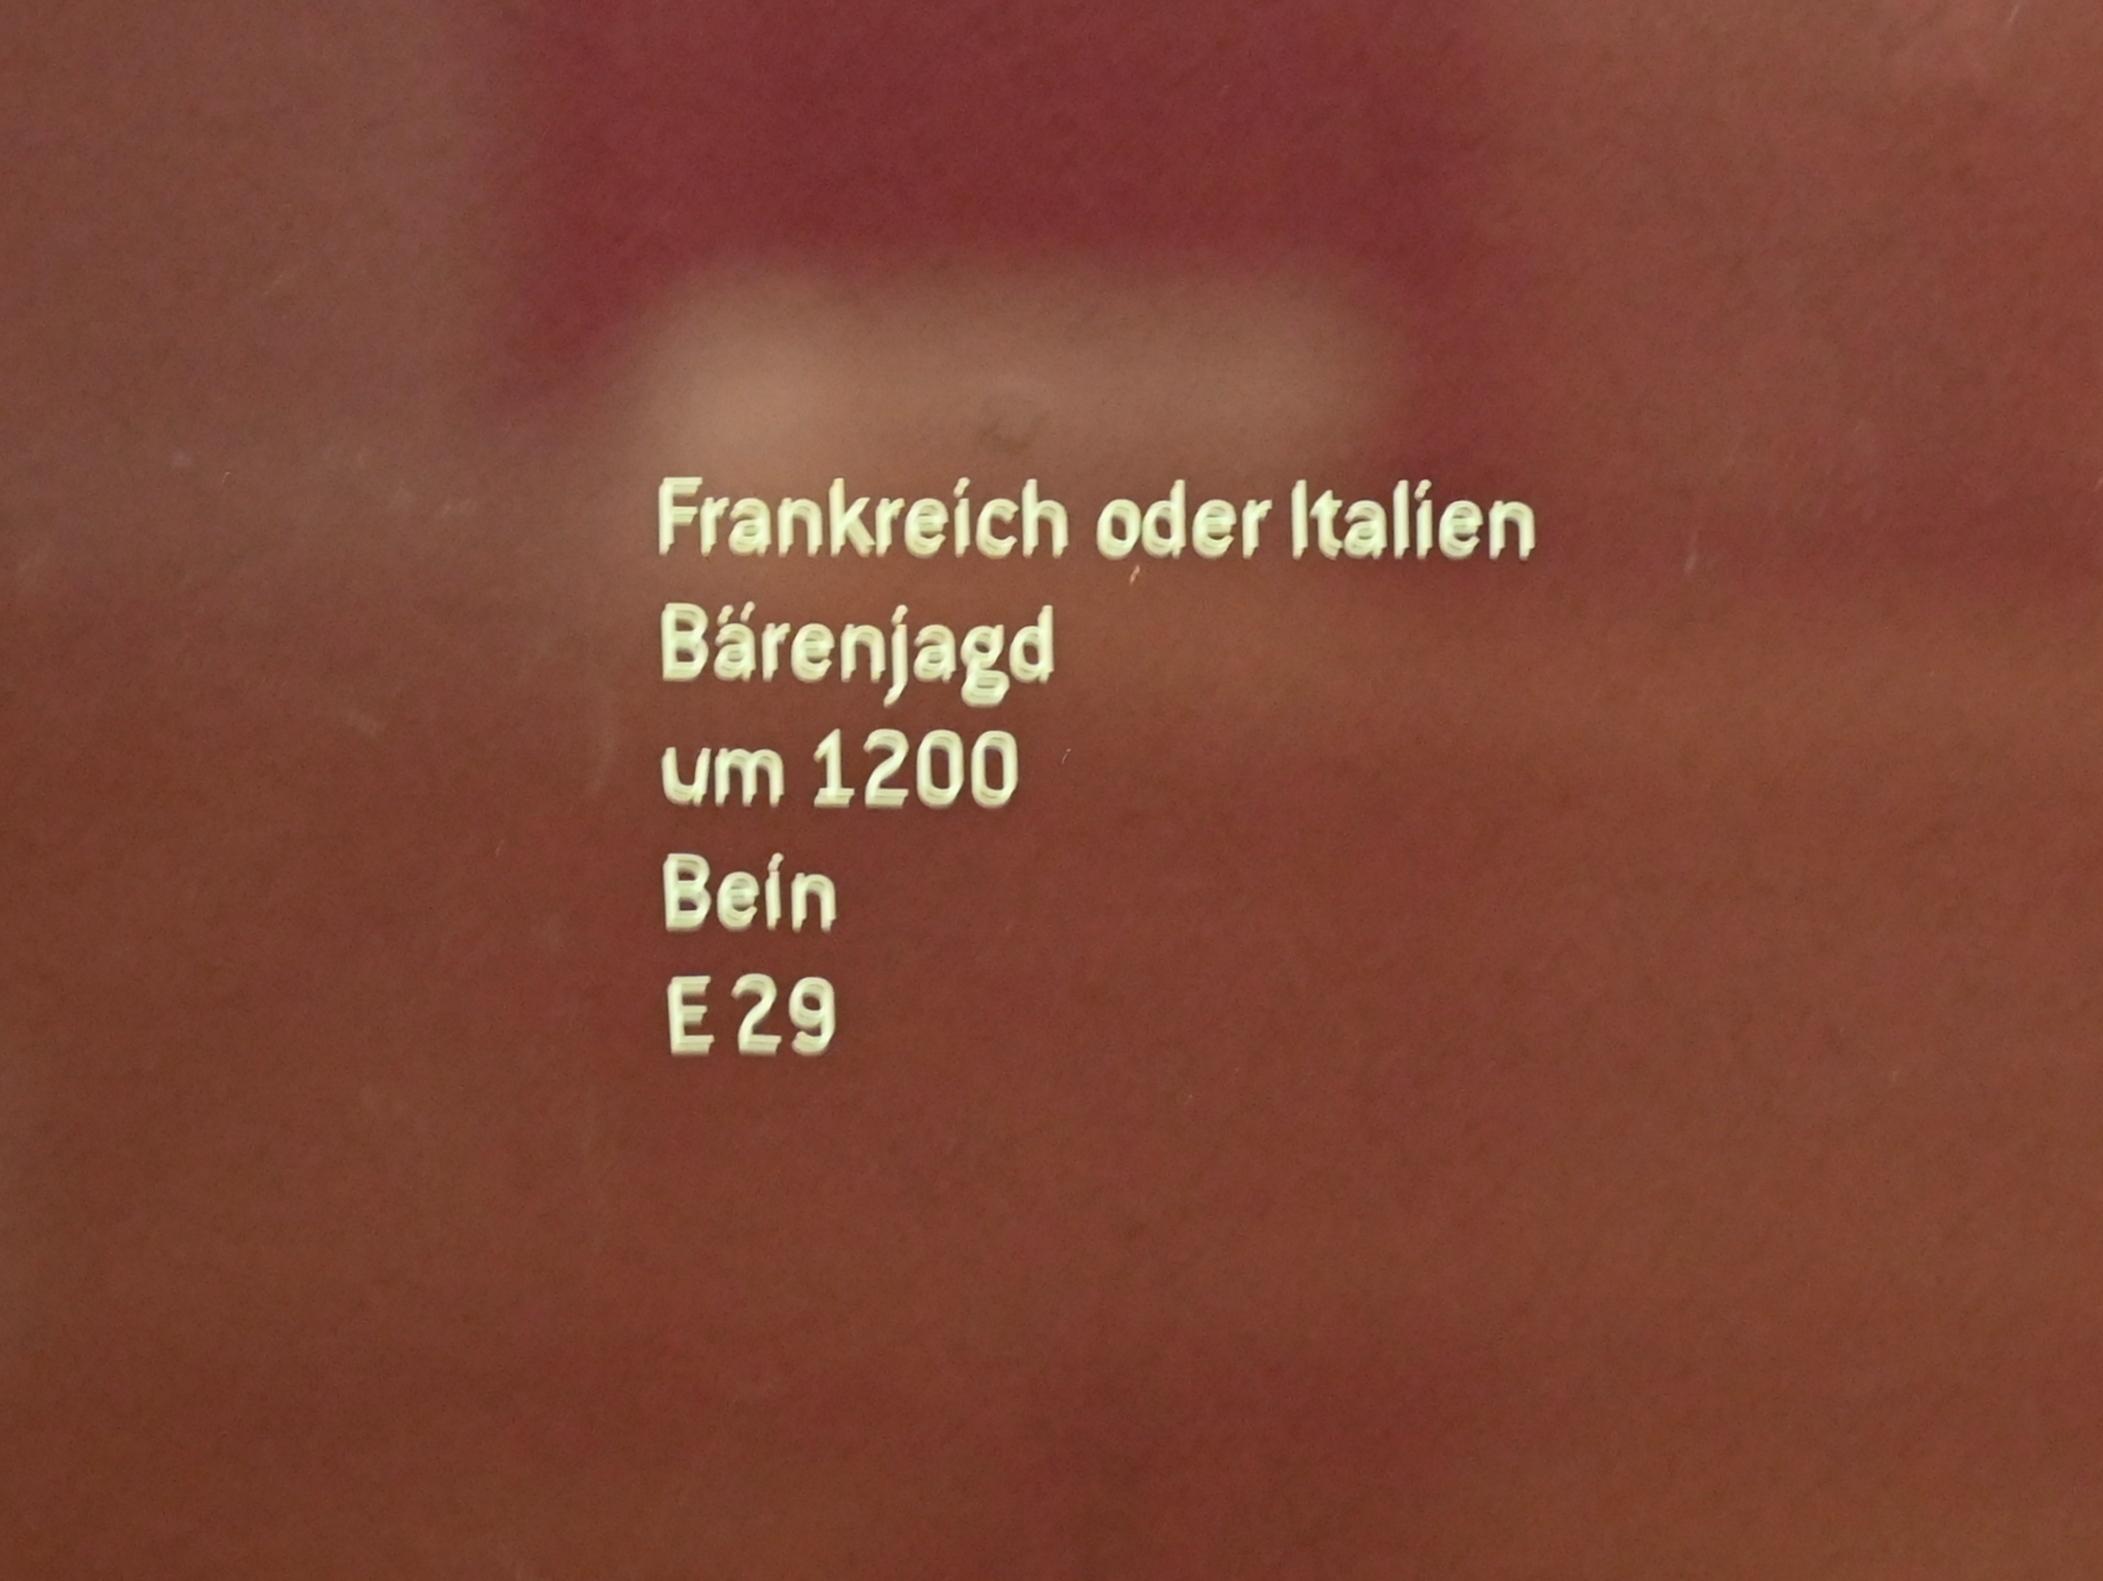 Bärenjagd, Innsbruck, Tiroler Landesmuseum, Ferdinandeum, Mittelalter 3, um 1200, Bild 2/2